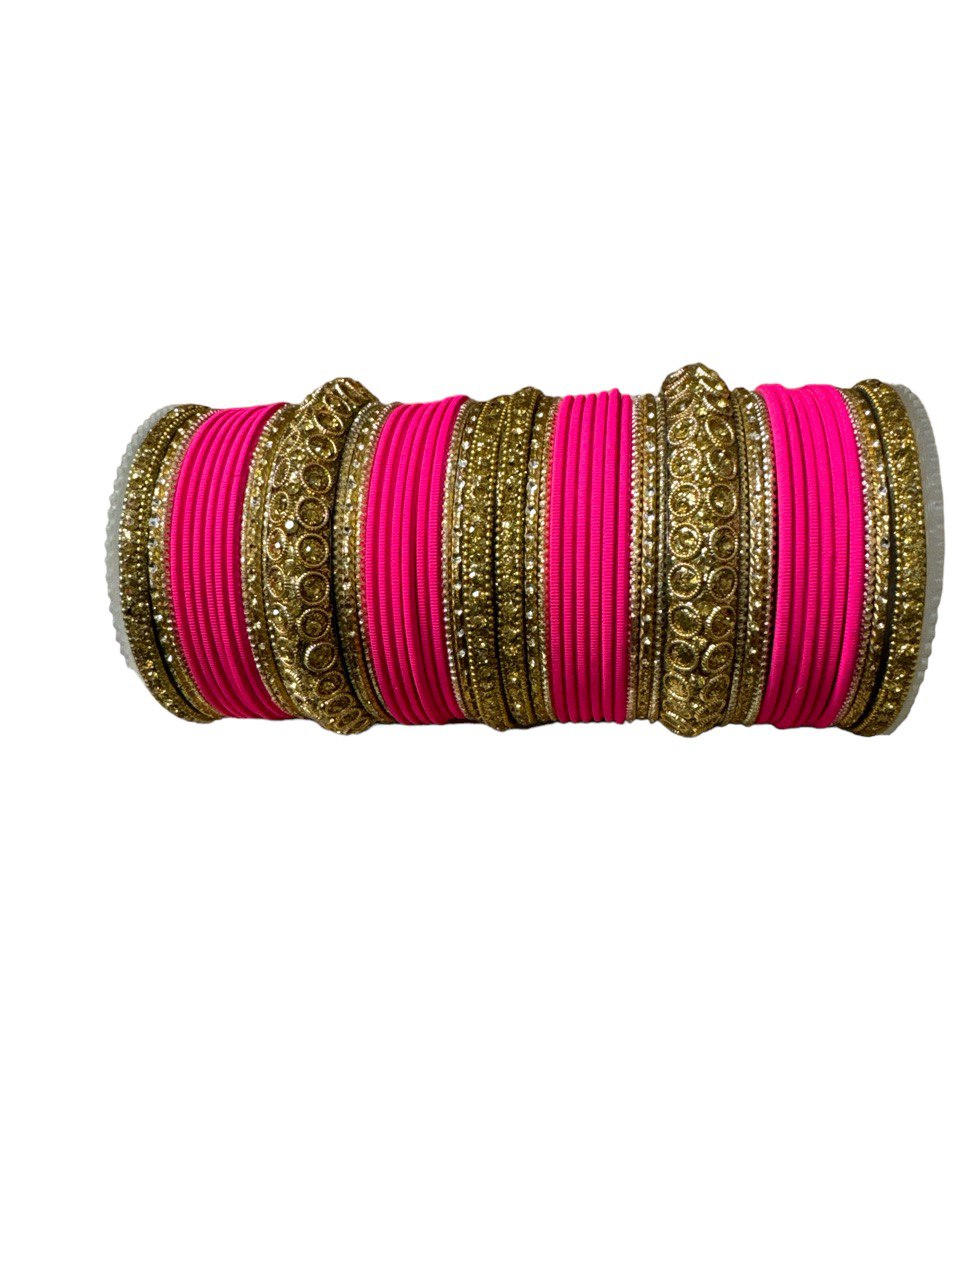 Indian Bridal Both Hand Bracelet/Bangle | Churiyan | Kangan Set #KP1200